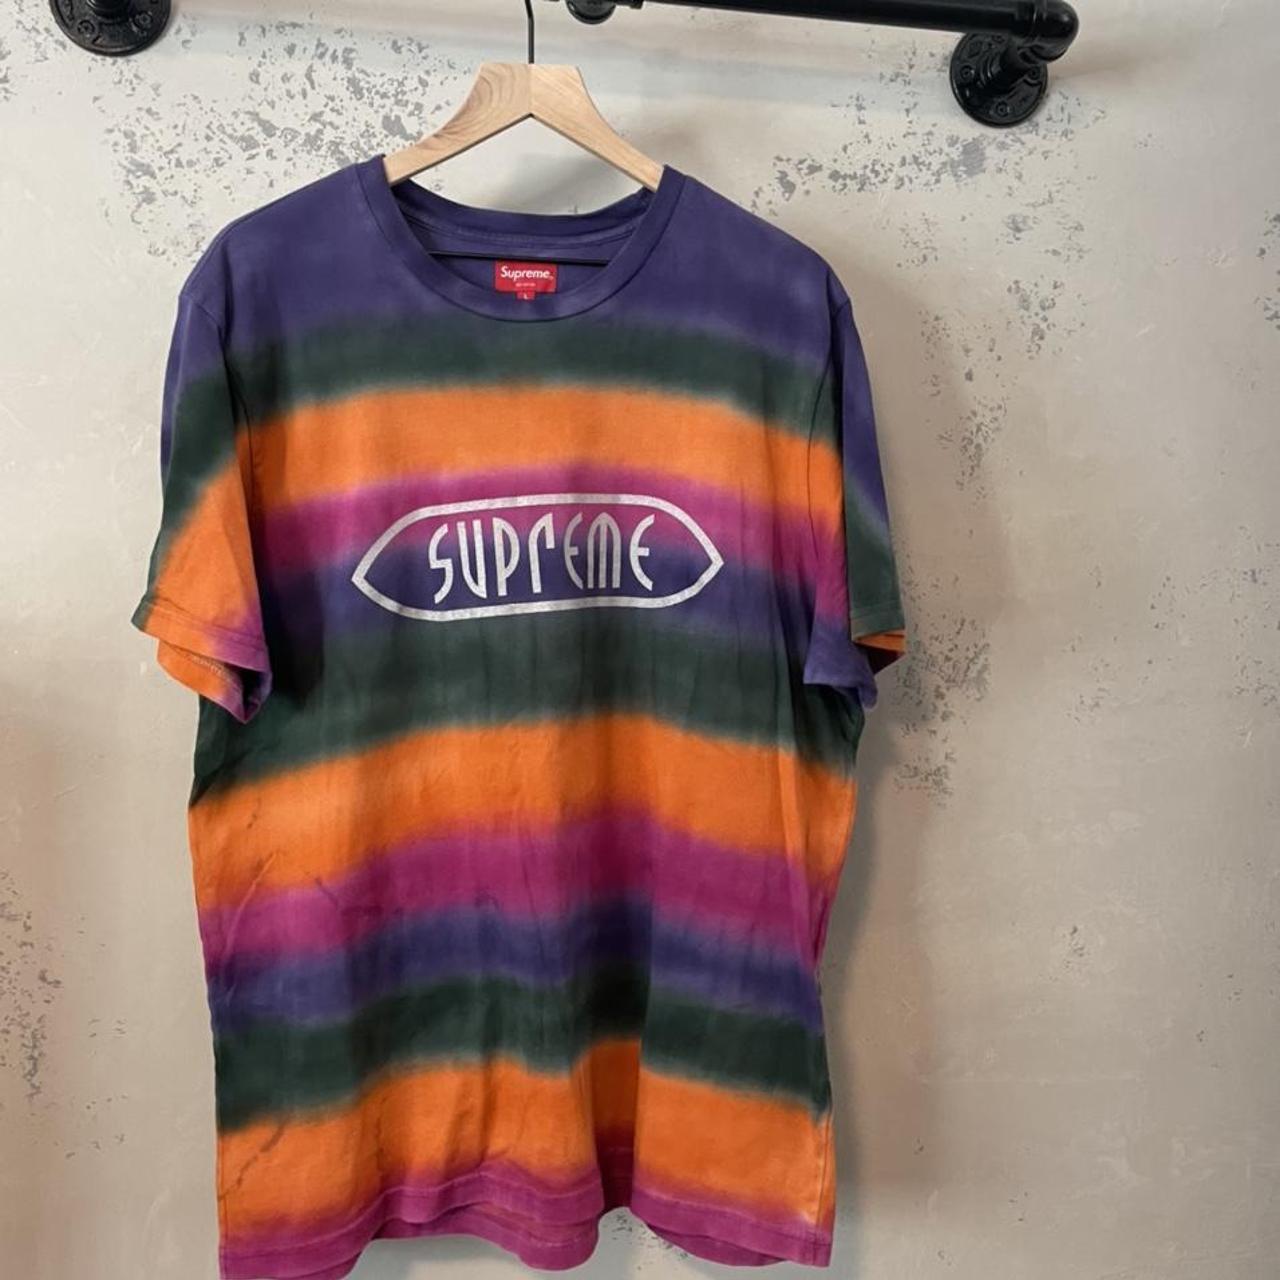 Supreme Tie Dye Tee - Rainbow pattern, 2019 drop -... - Depop